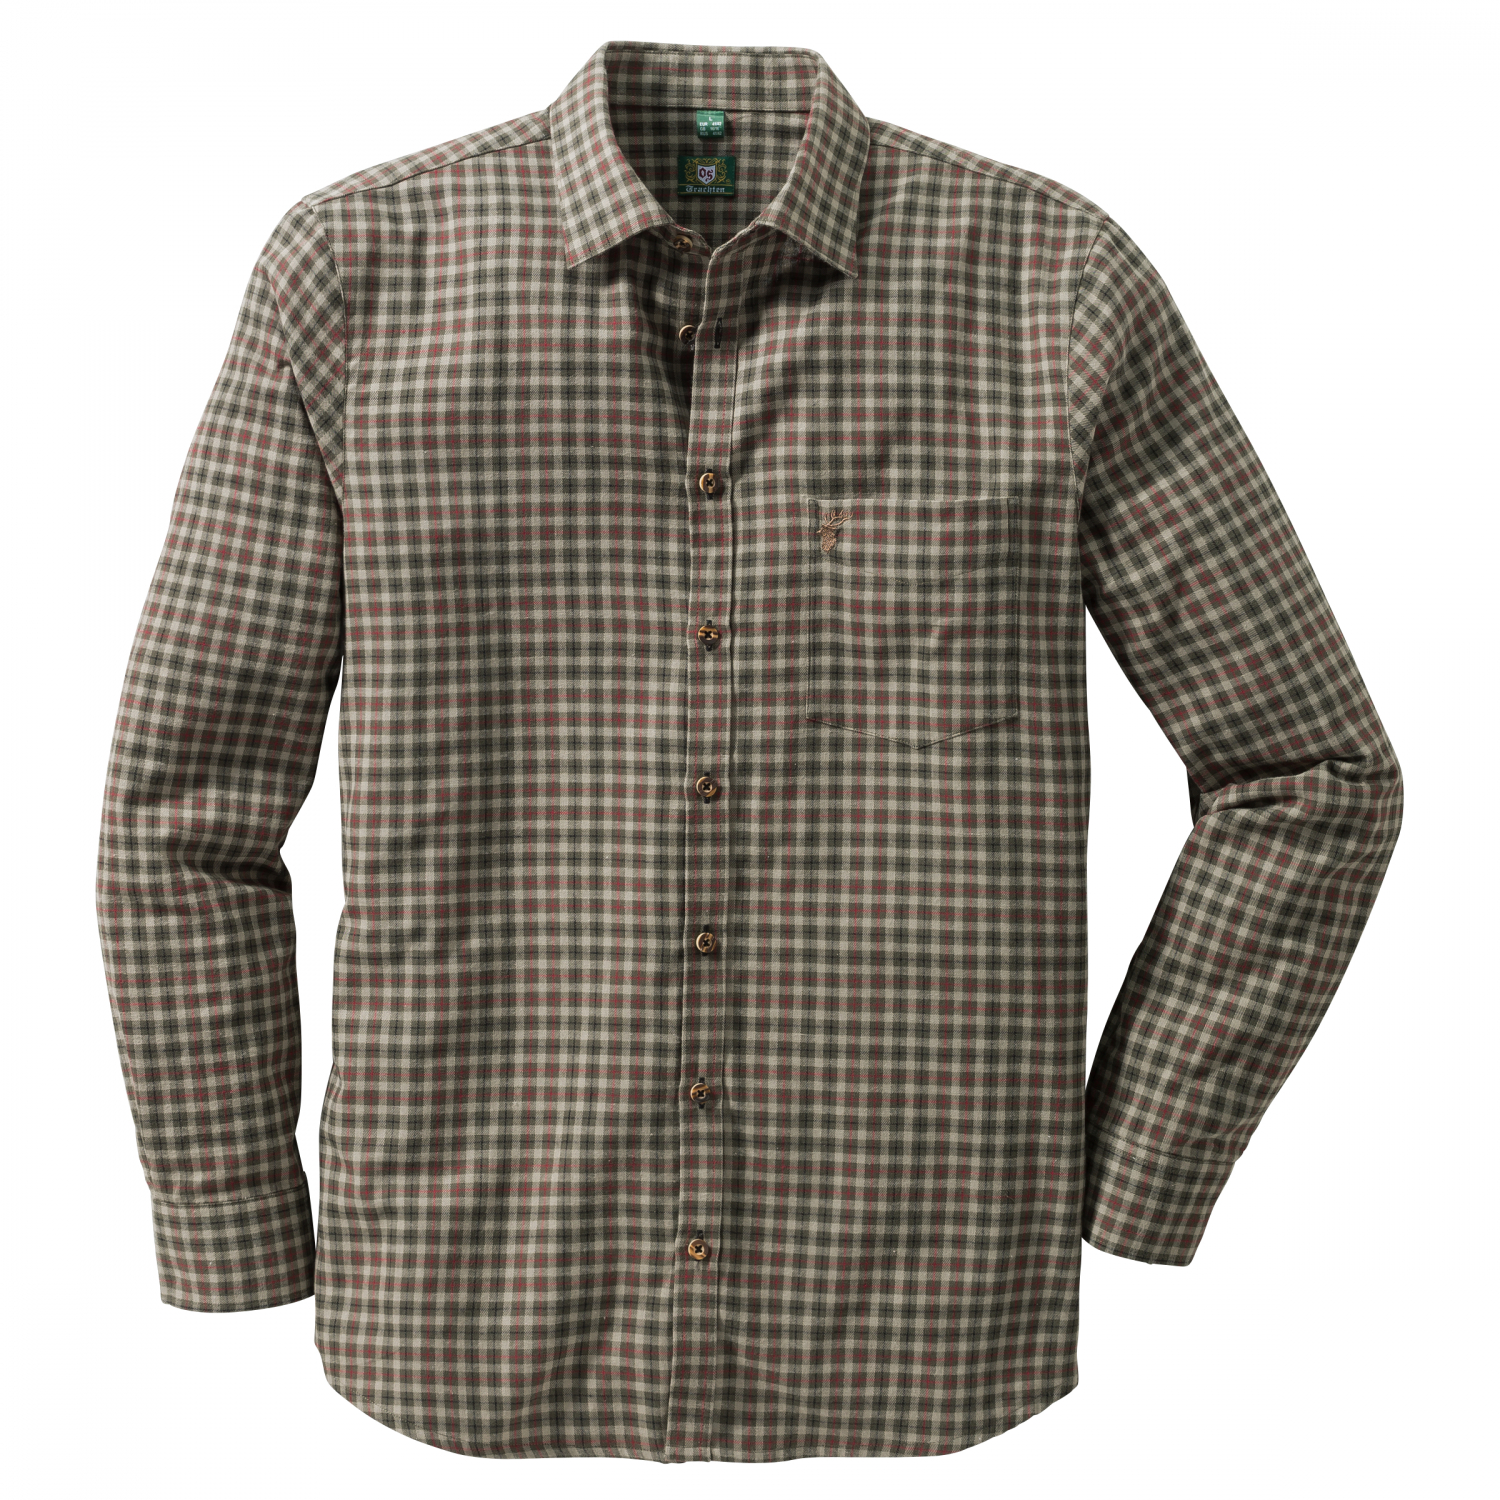 OS Trachten Men's OS Trachten Men's Longsleeve Shirt (checkered) 